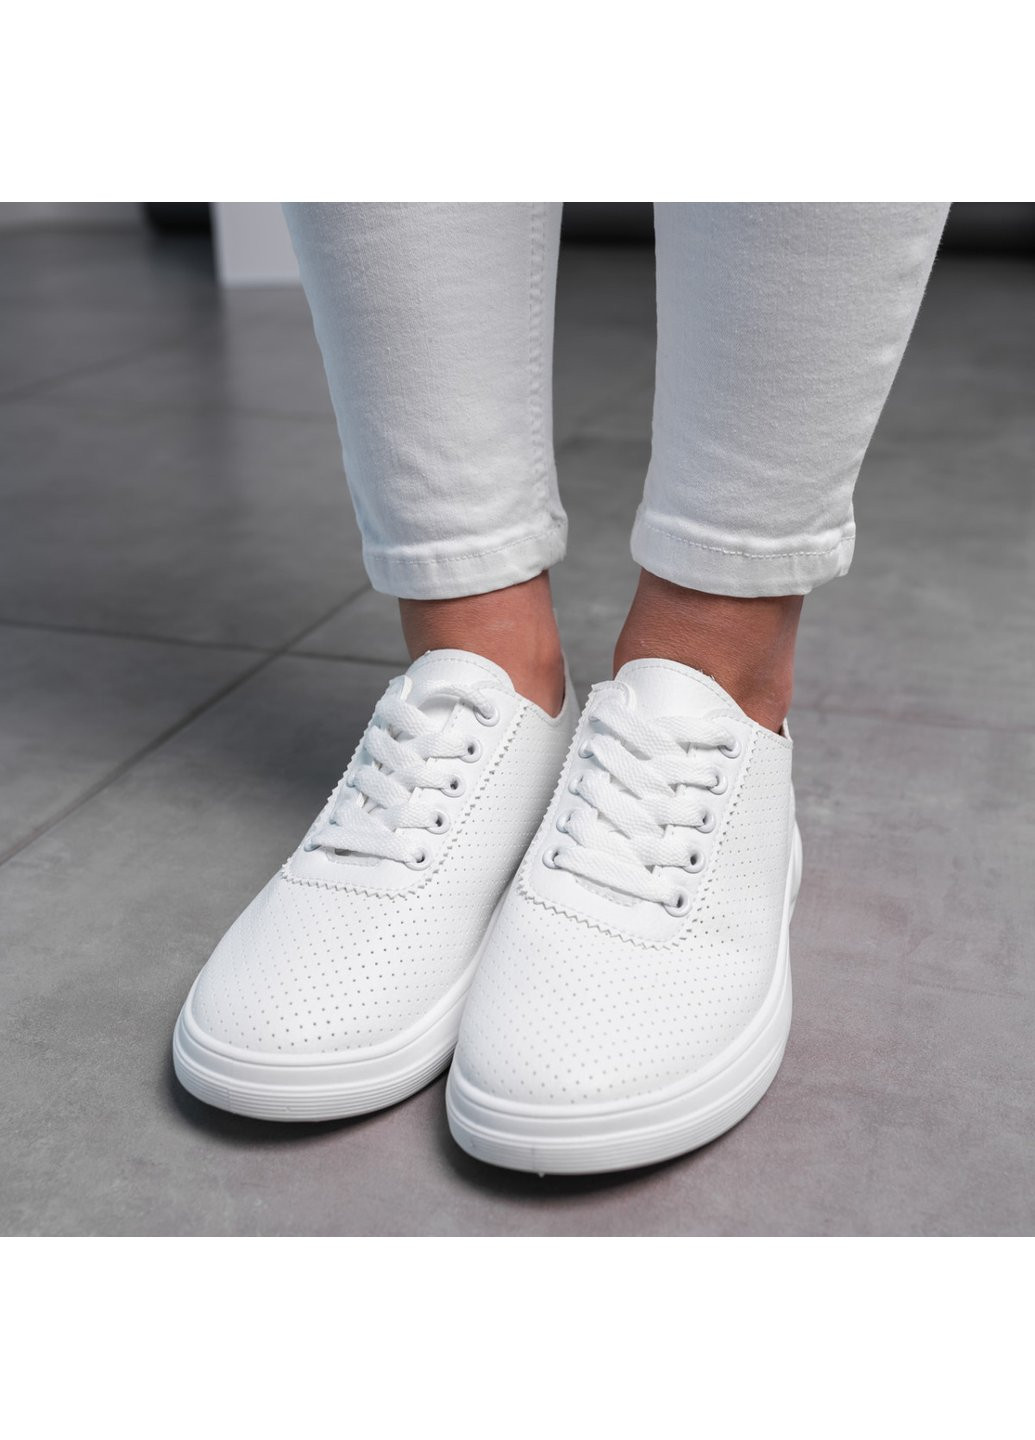 Белые демисезонные кроссовки женские bobby 3615 белый Fashion